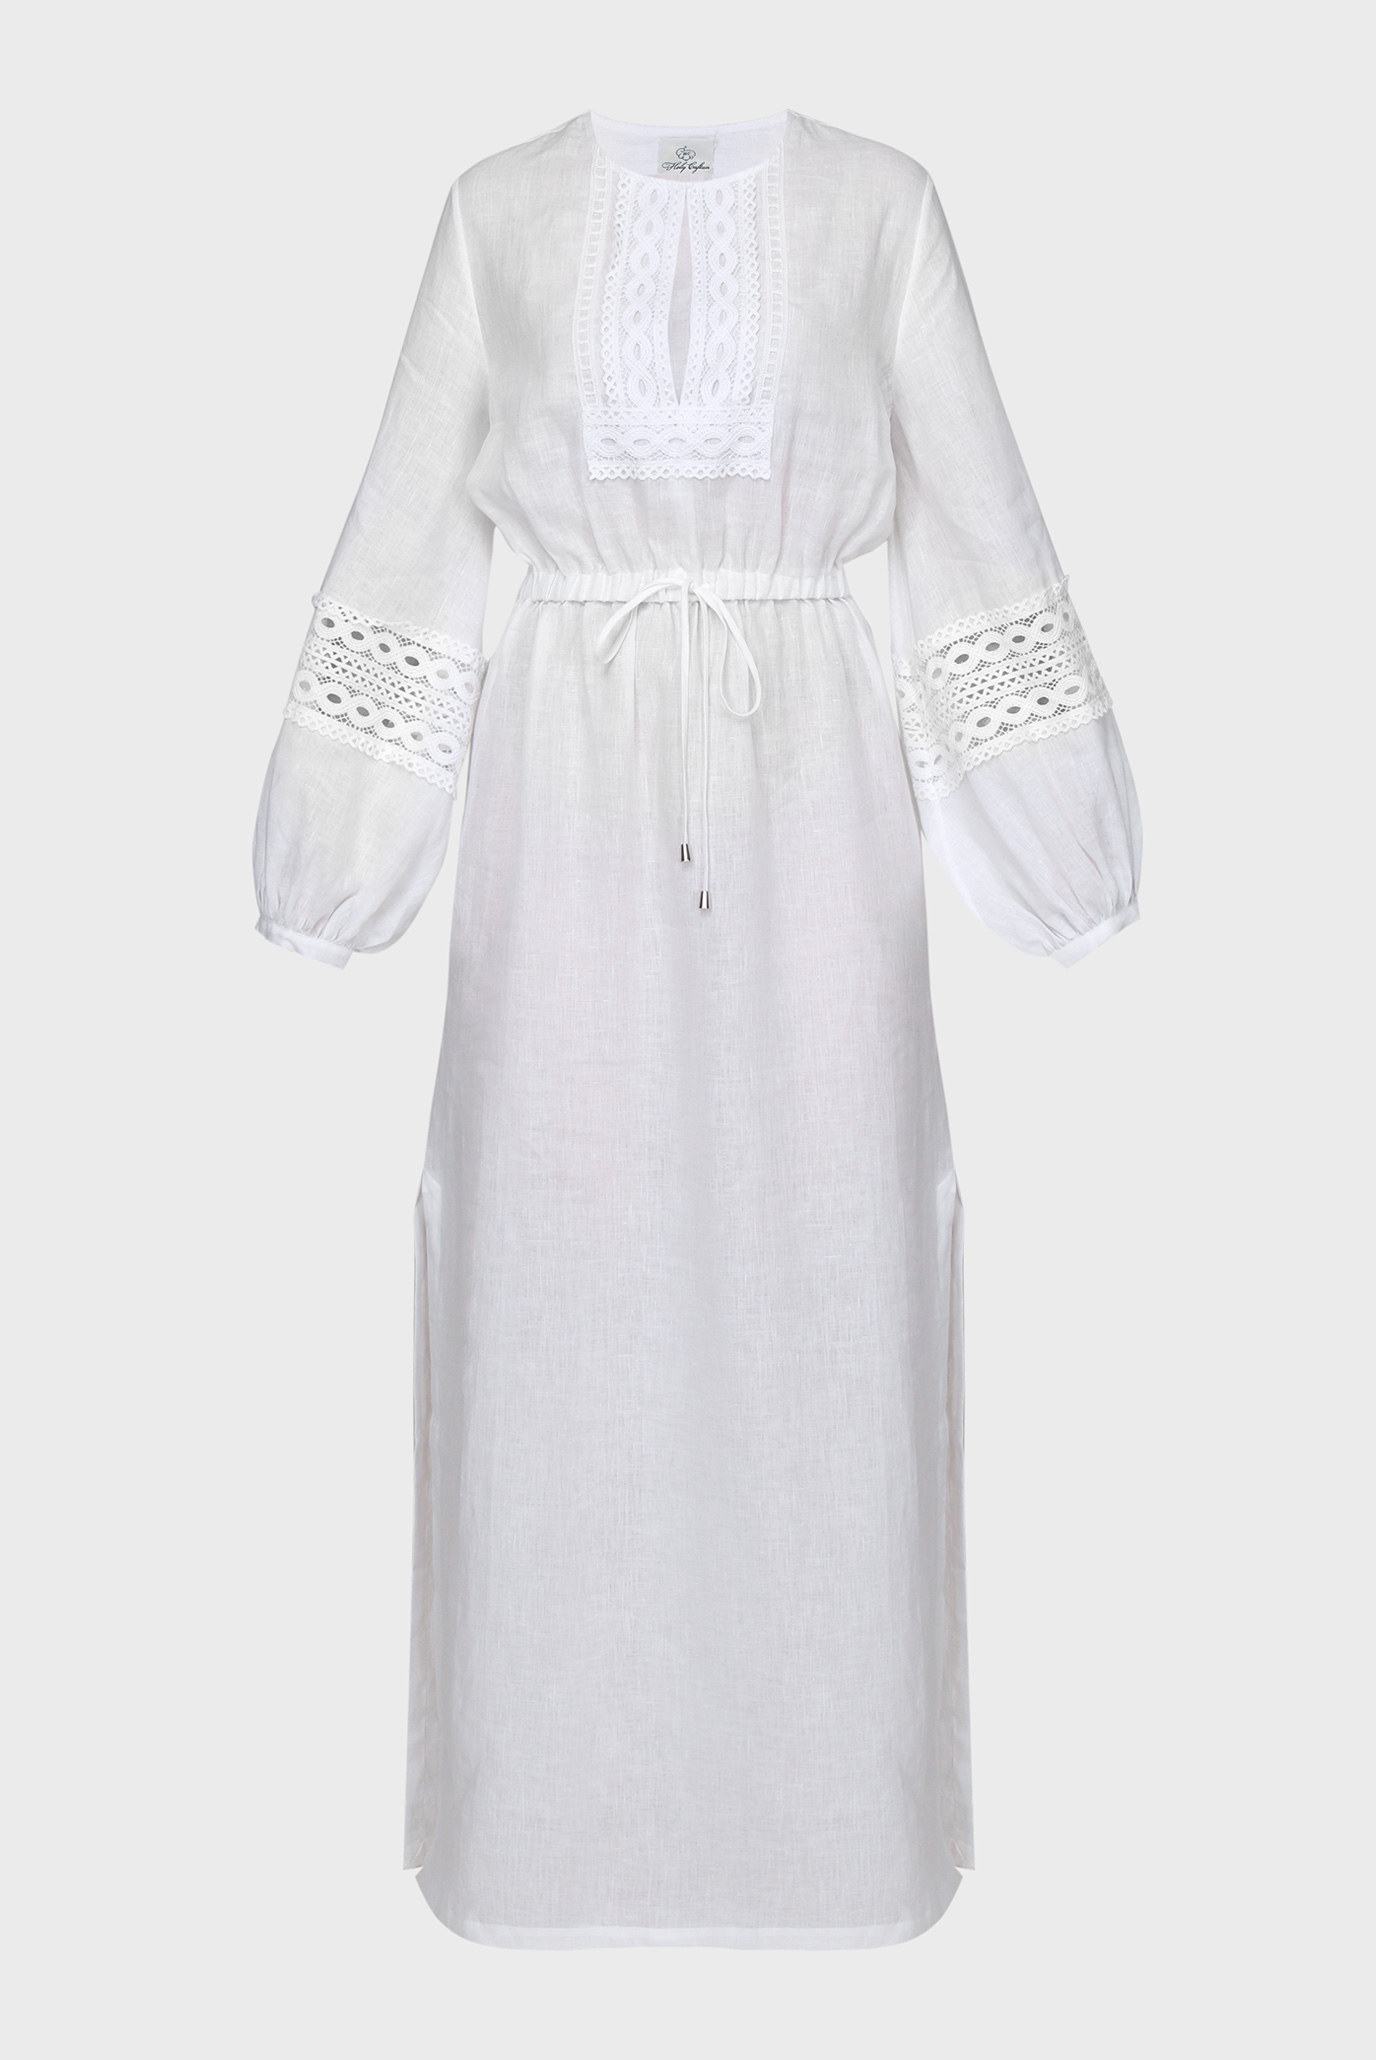 Жіноча біла лляна сукня 1